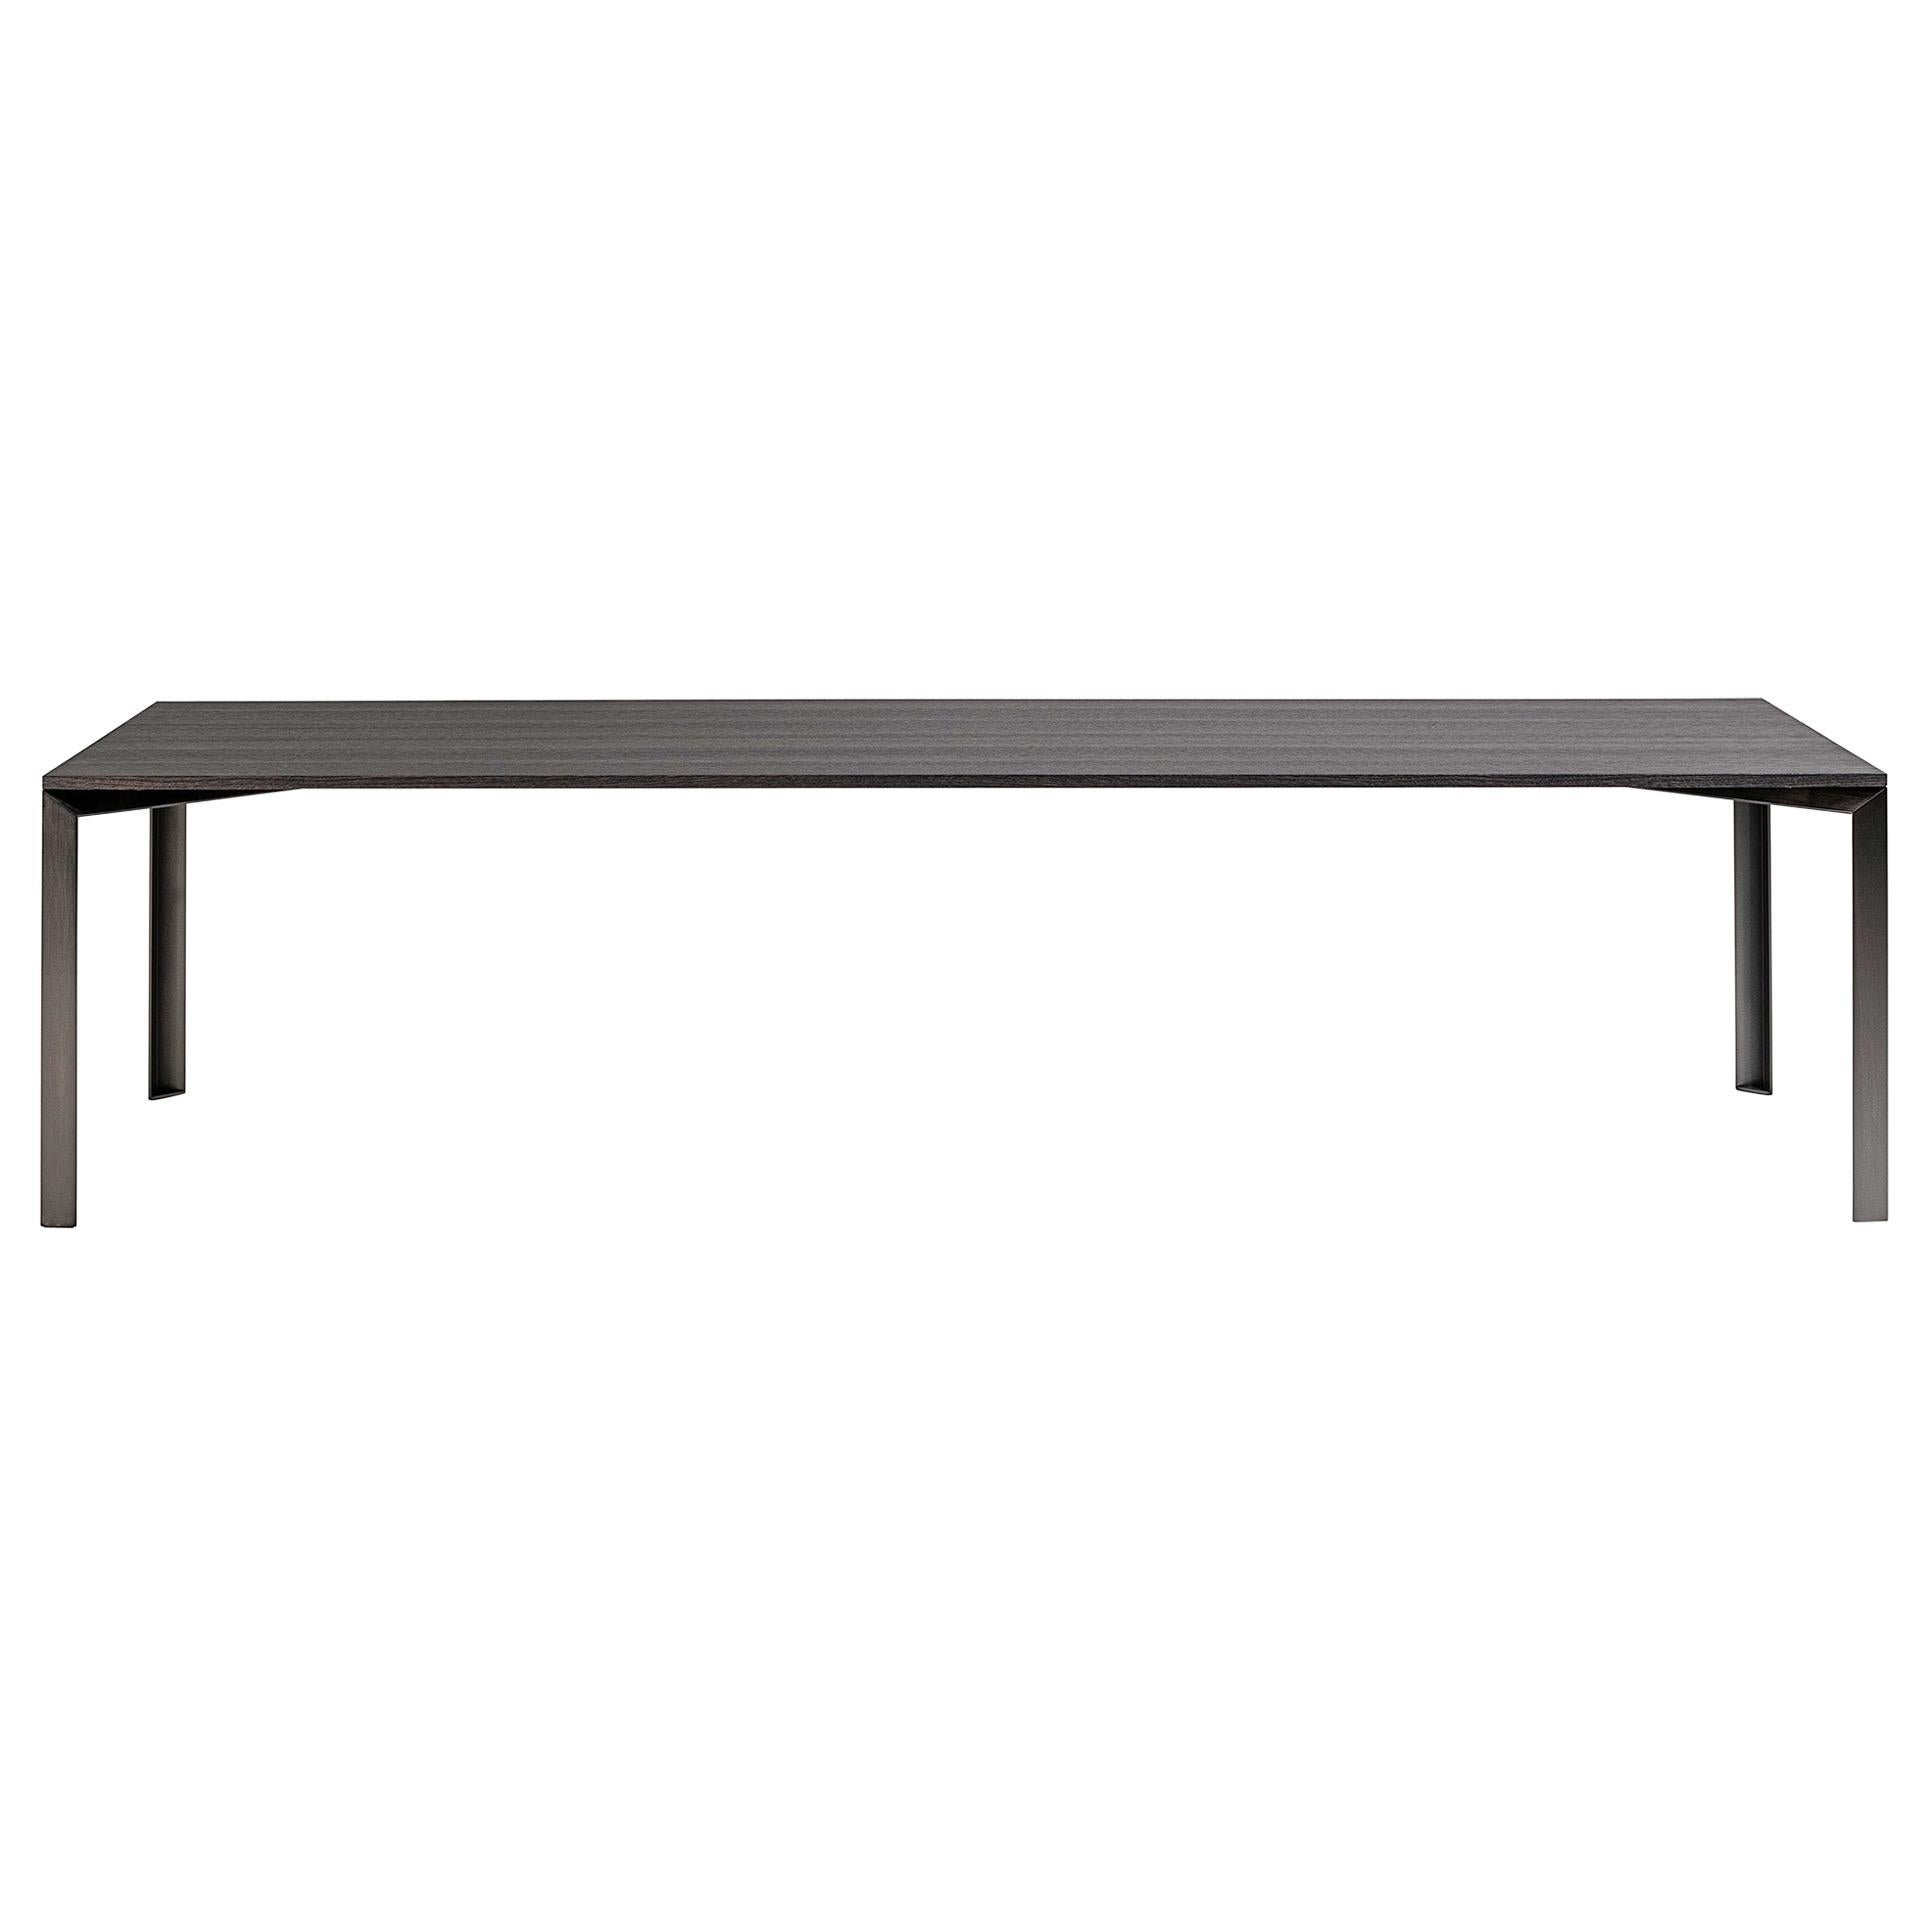 Desalto L45 Table Designed by Guglielmo Poletti